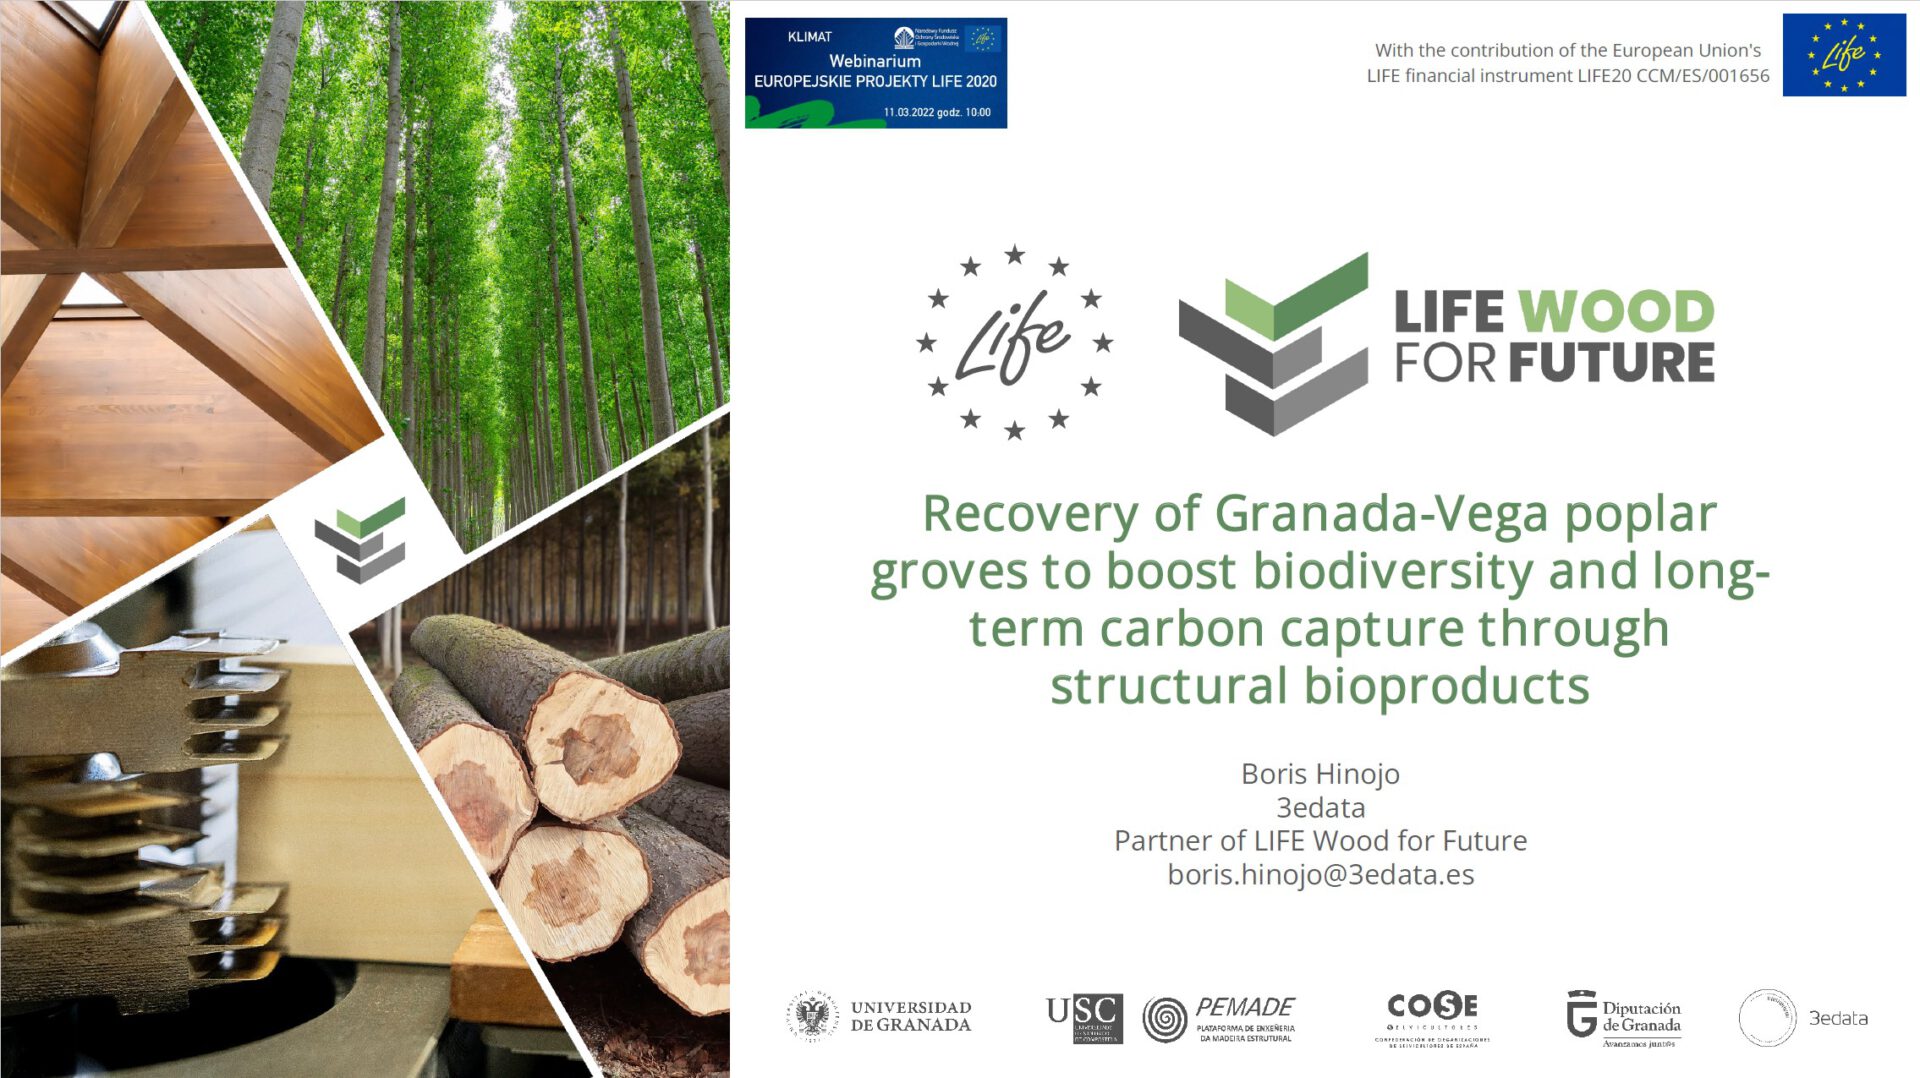 LIFE Wood for Future presentado en el seminario organizado por el Gobierno de Polonia sobre proyectos Europeos LIFE del Subprograma Clima